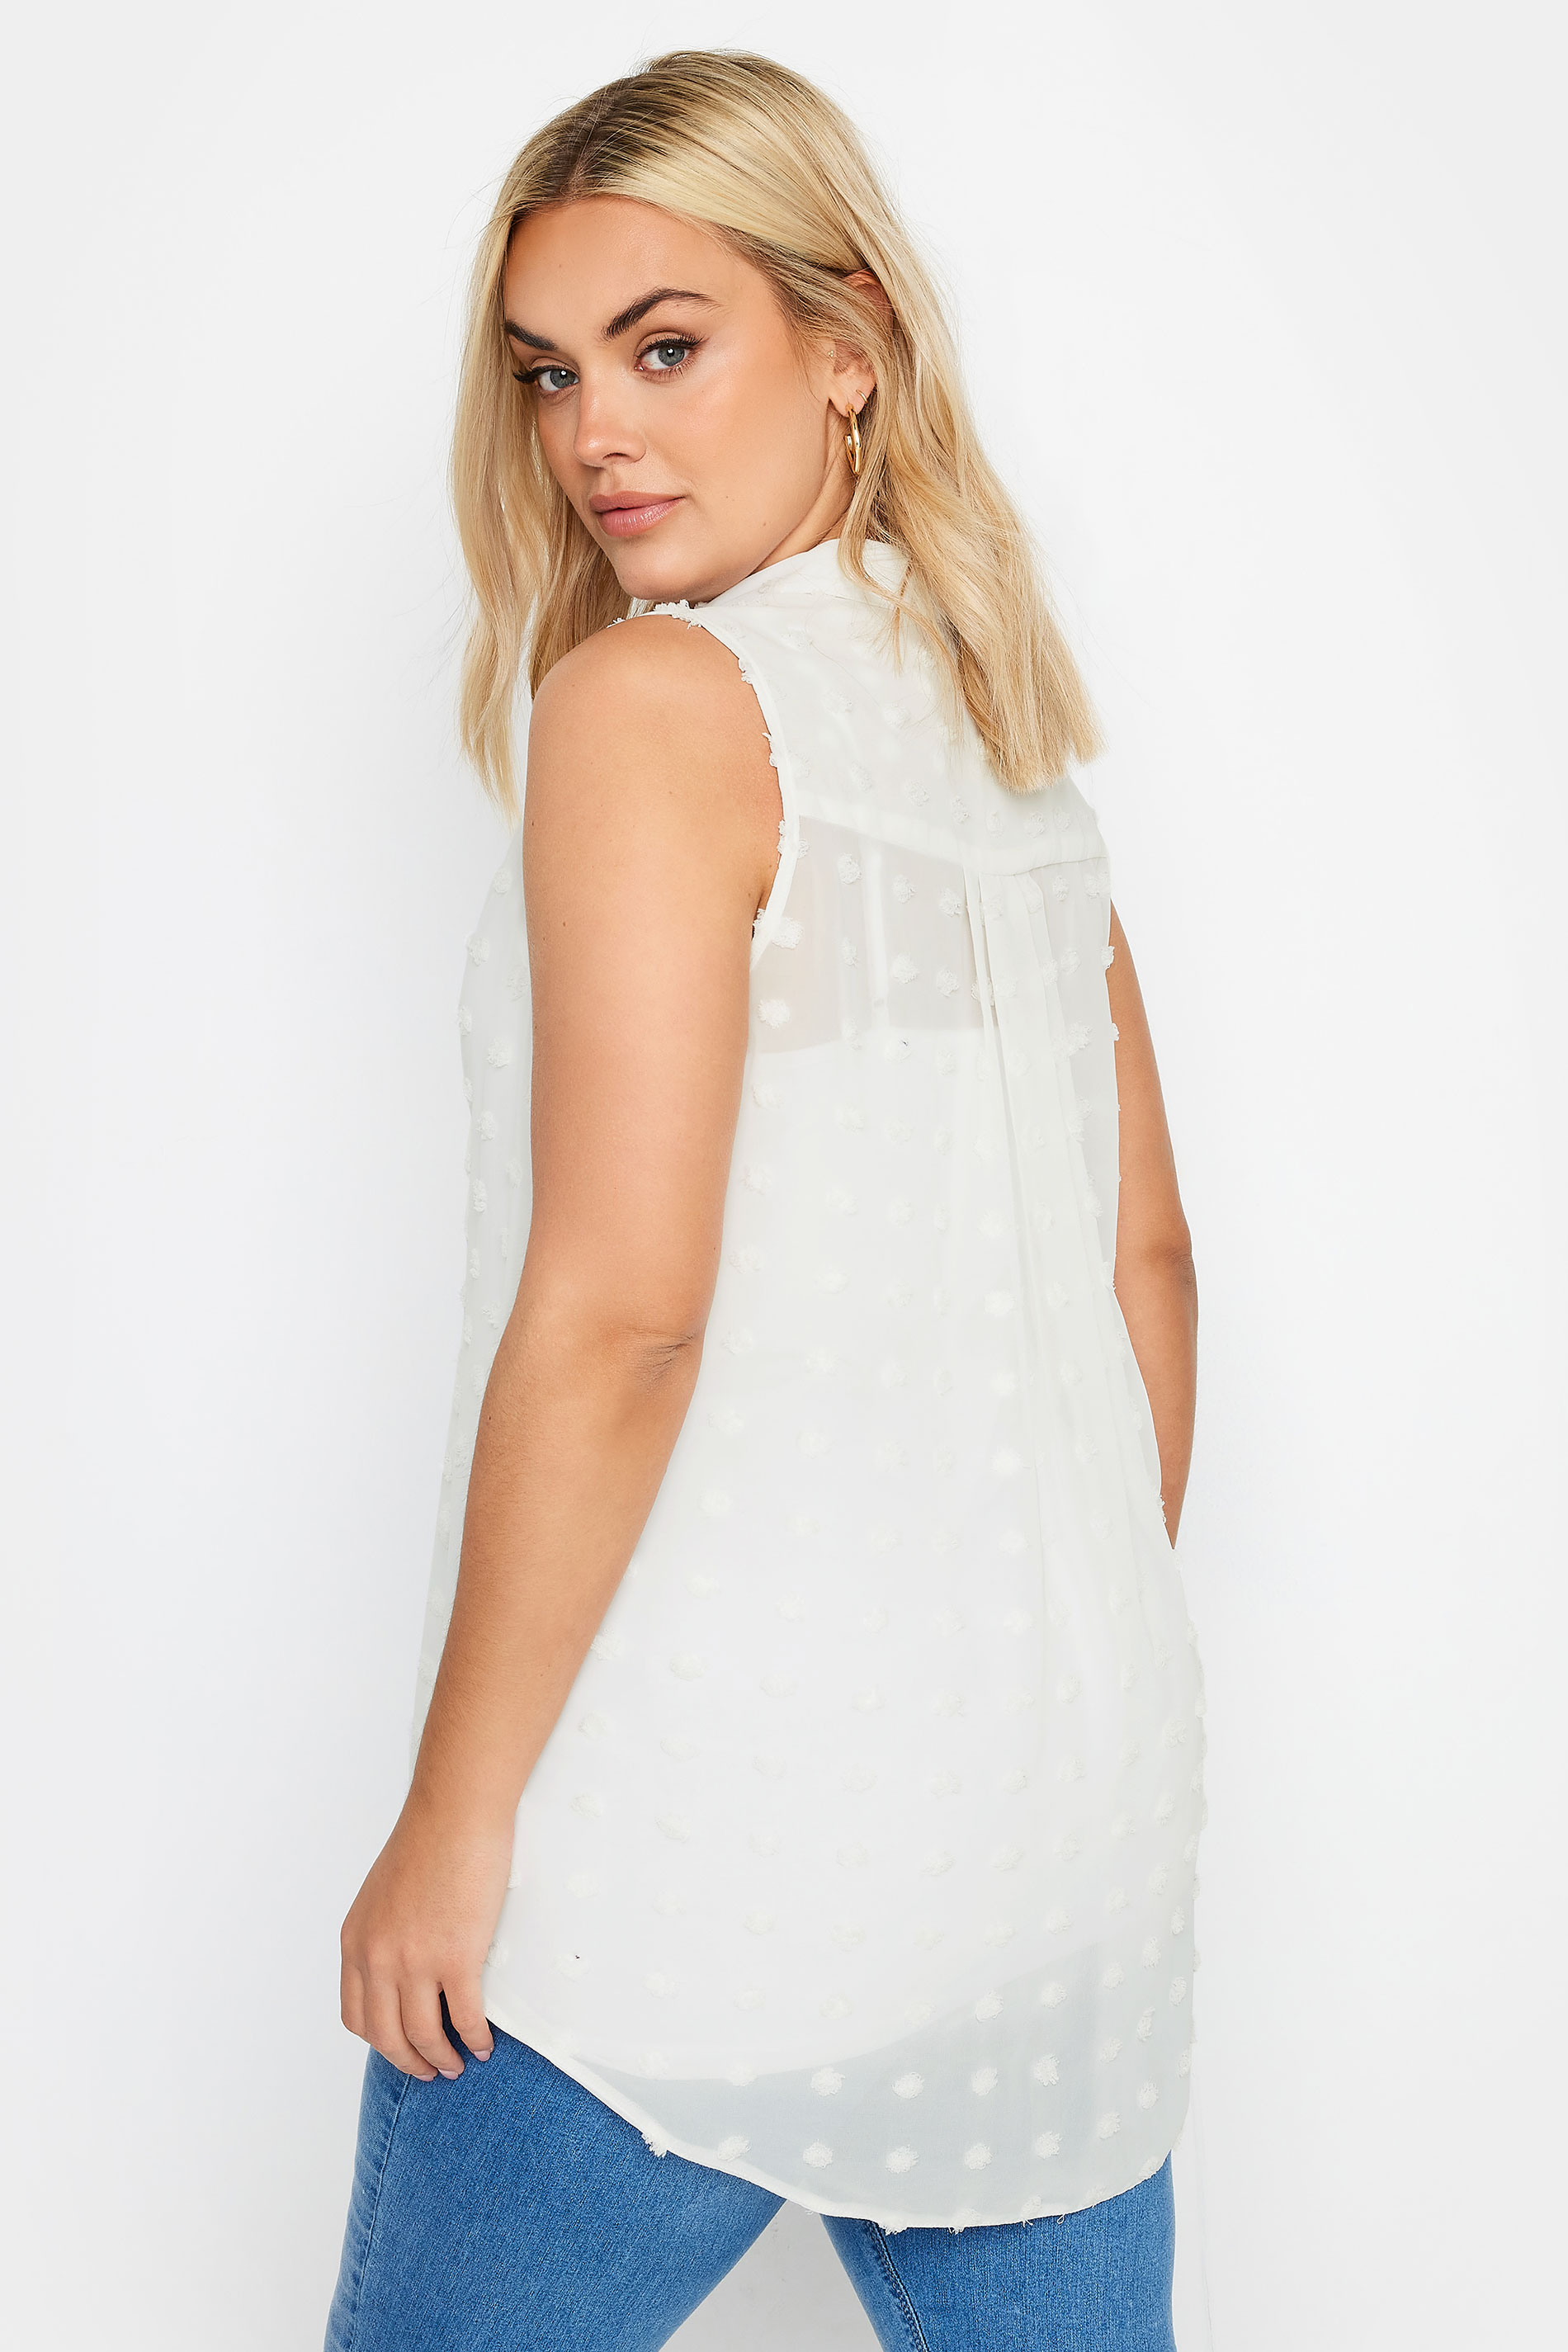 YOURS Plus Size White Sleeveless Shirt | Yours Clothing 3